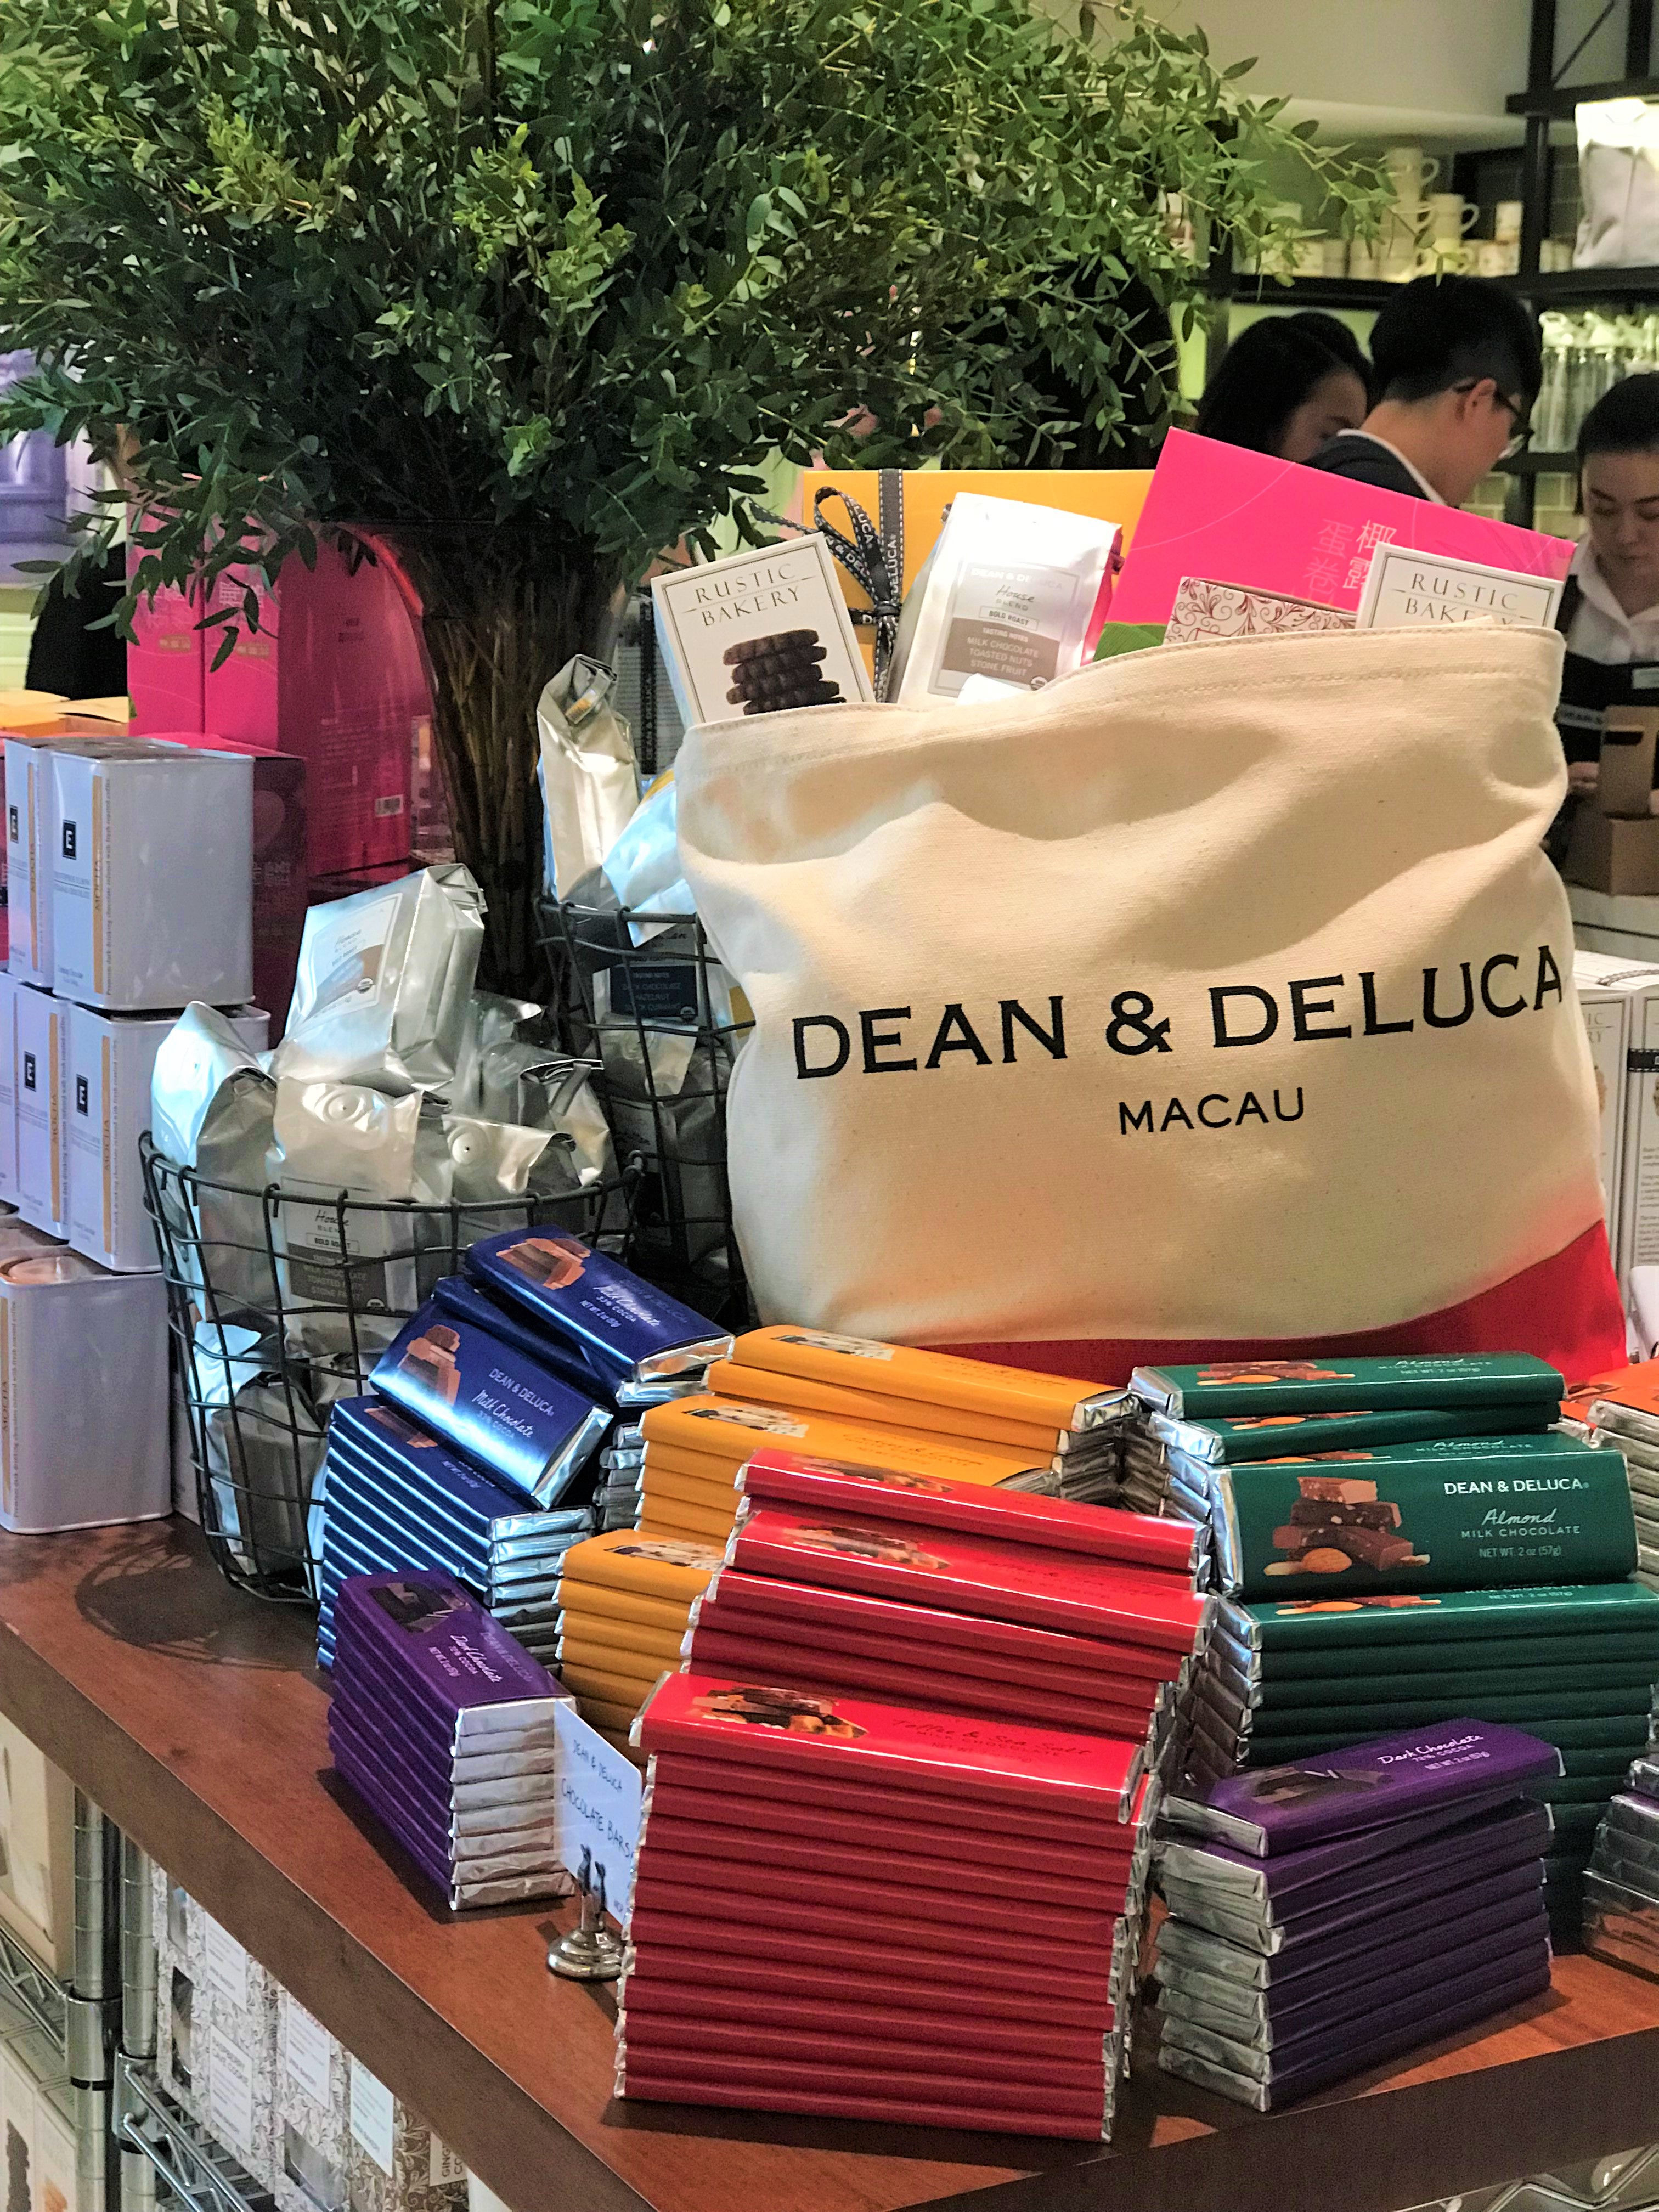 Dean Deluca Display Macau Lifestyle